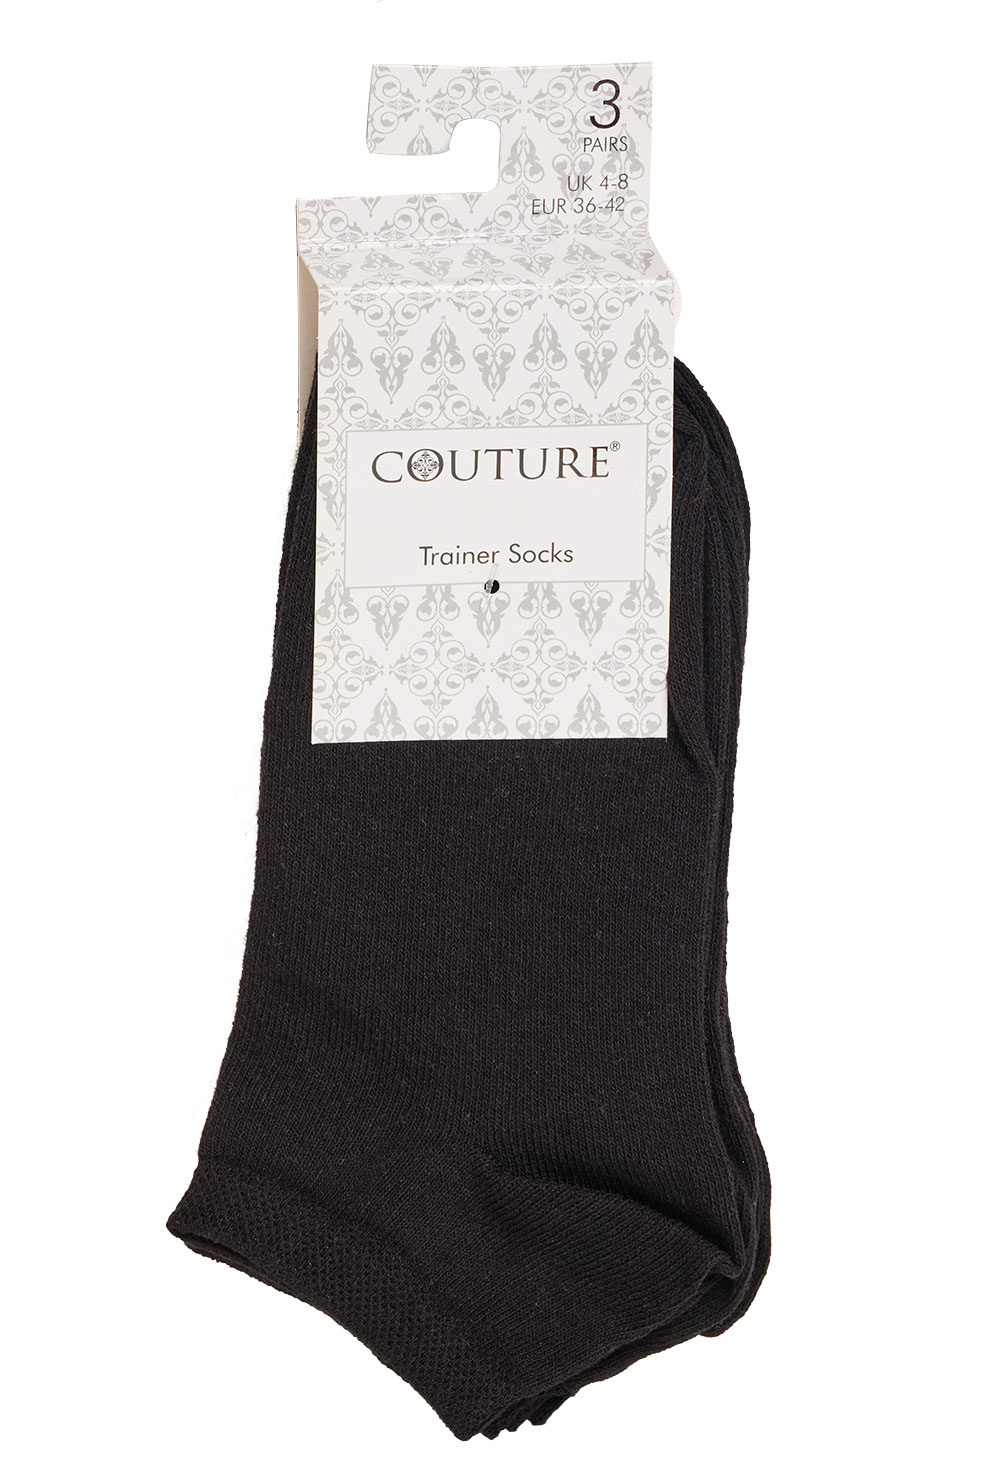 Buy Couture Trainer Socks - 3 Pairs per Pack - Porselli Dancewear